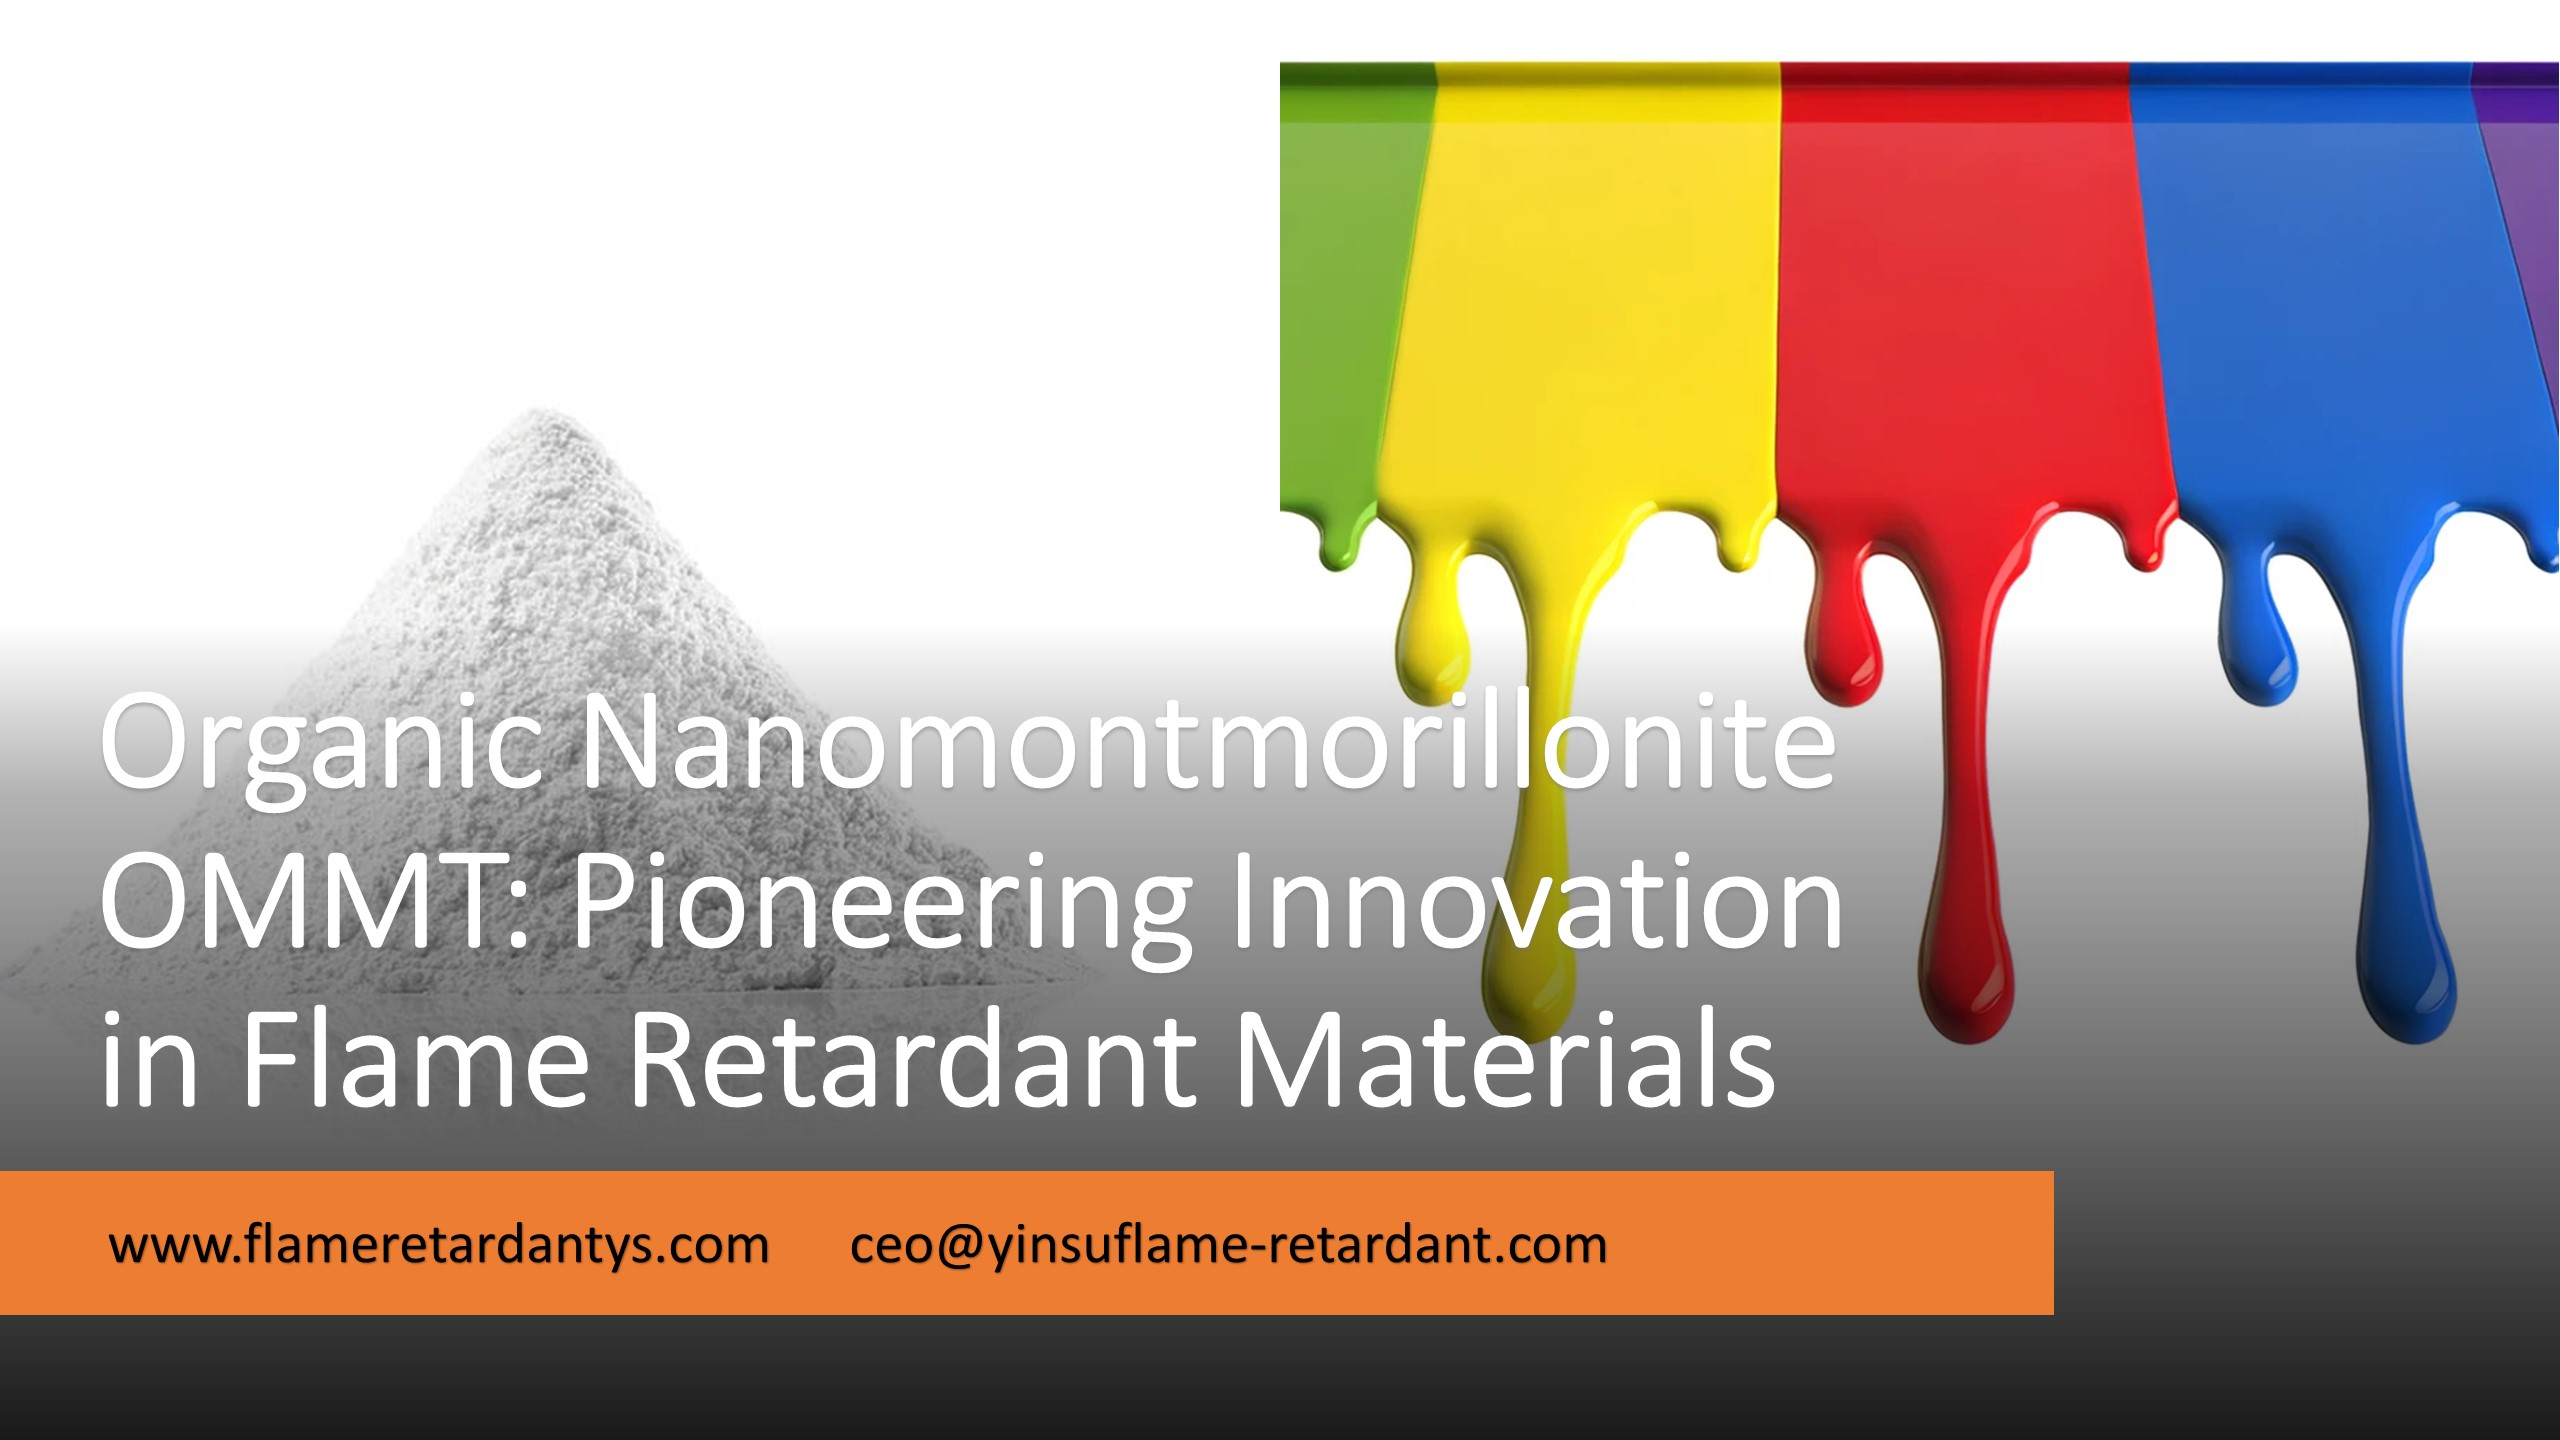 5.8 Organic Nanomontmorillonite Pioneering Innovation in Flame Retardant Materials1